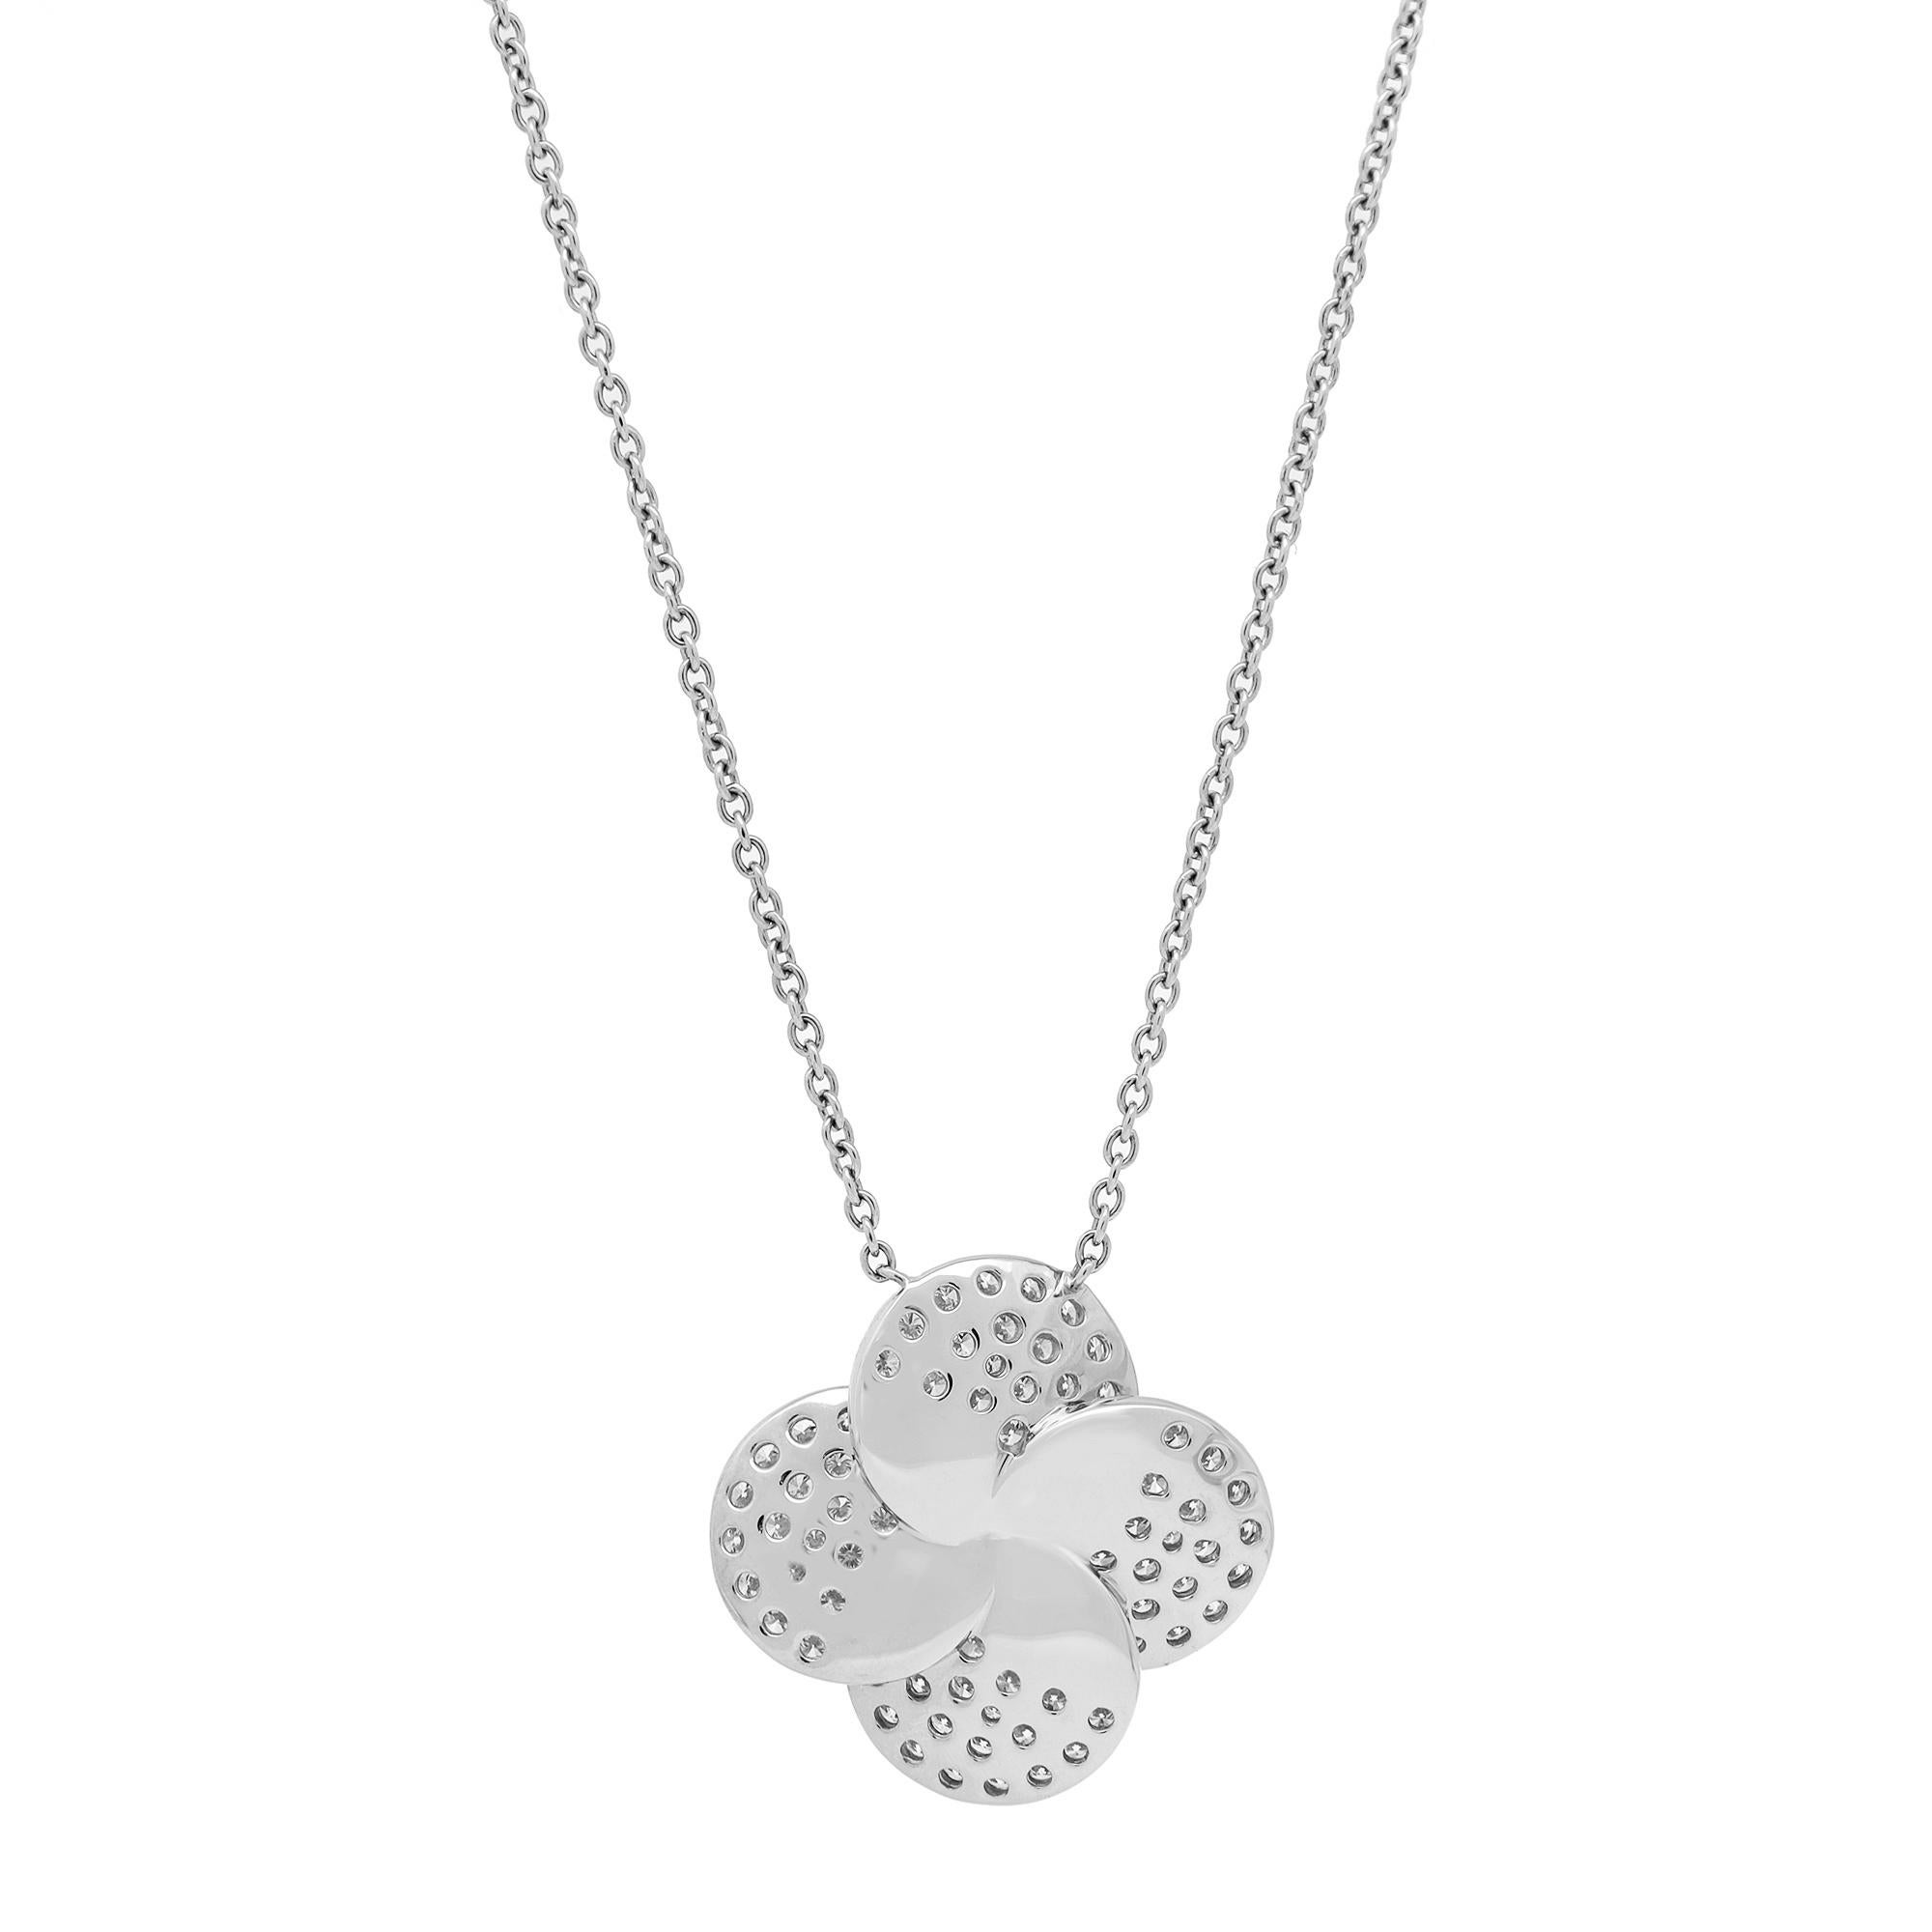 Women's 1.76cttw Pave Set Round Cut Diamond Flower Pendant Necklace 18K White Gold For Sale